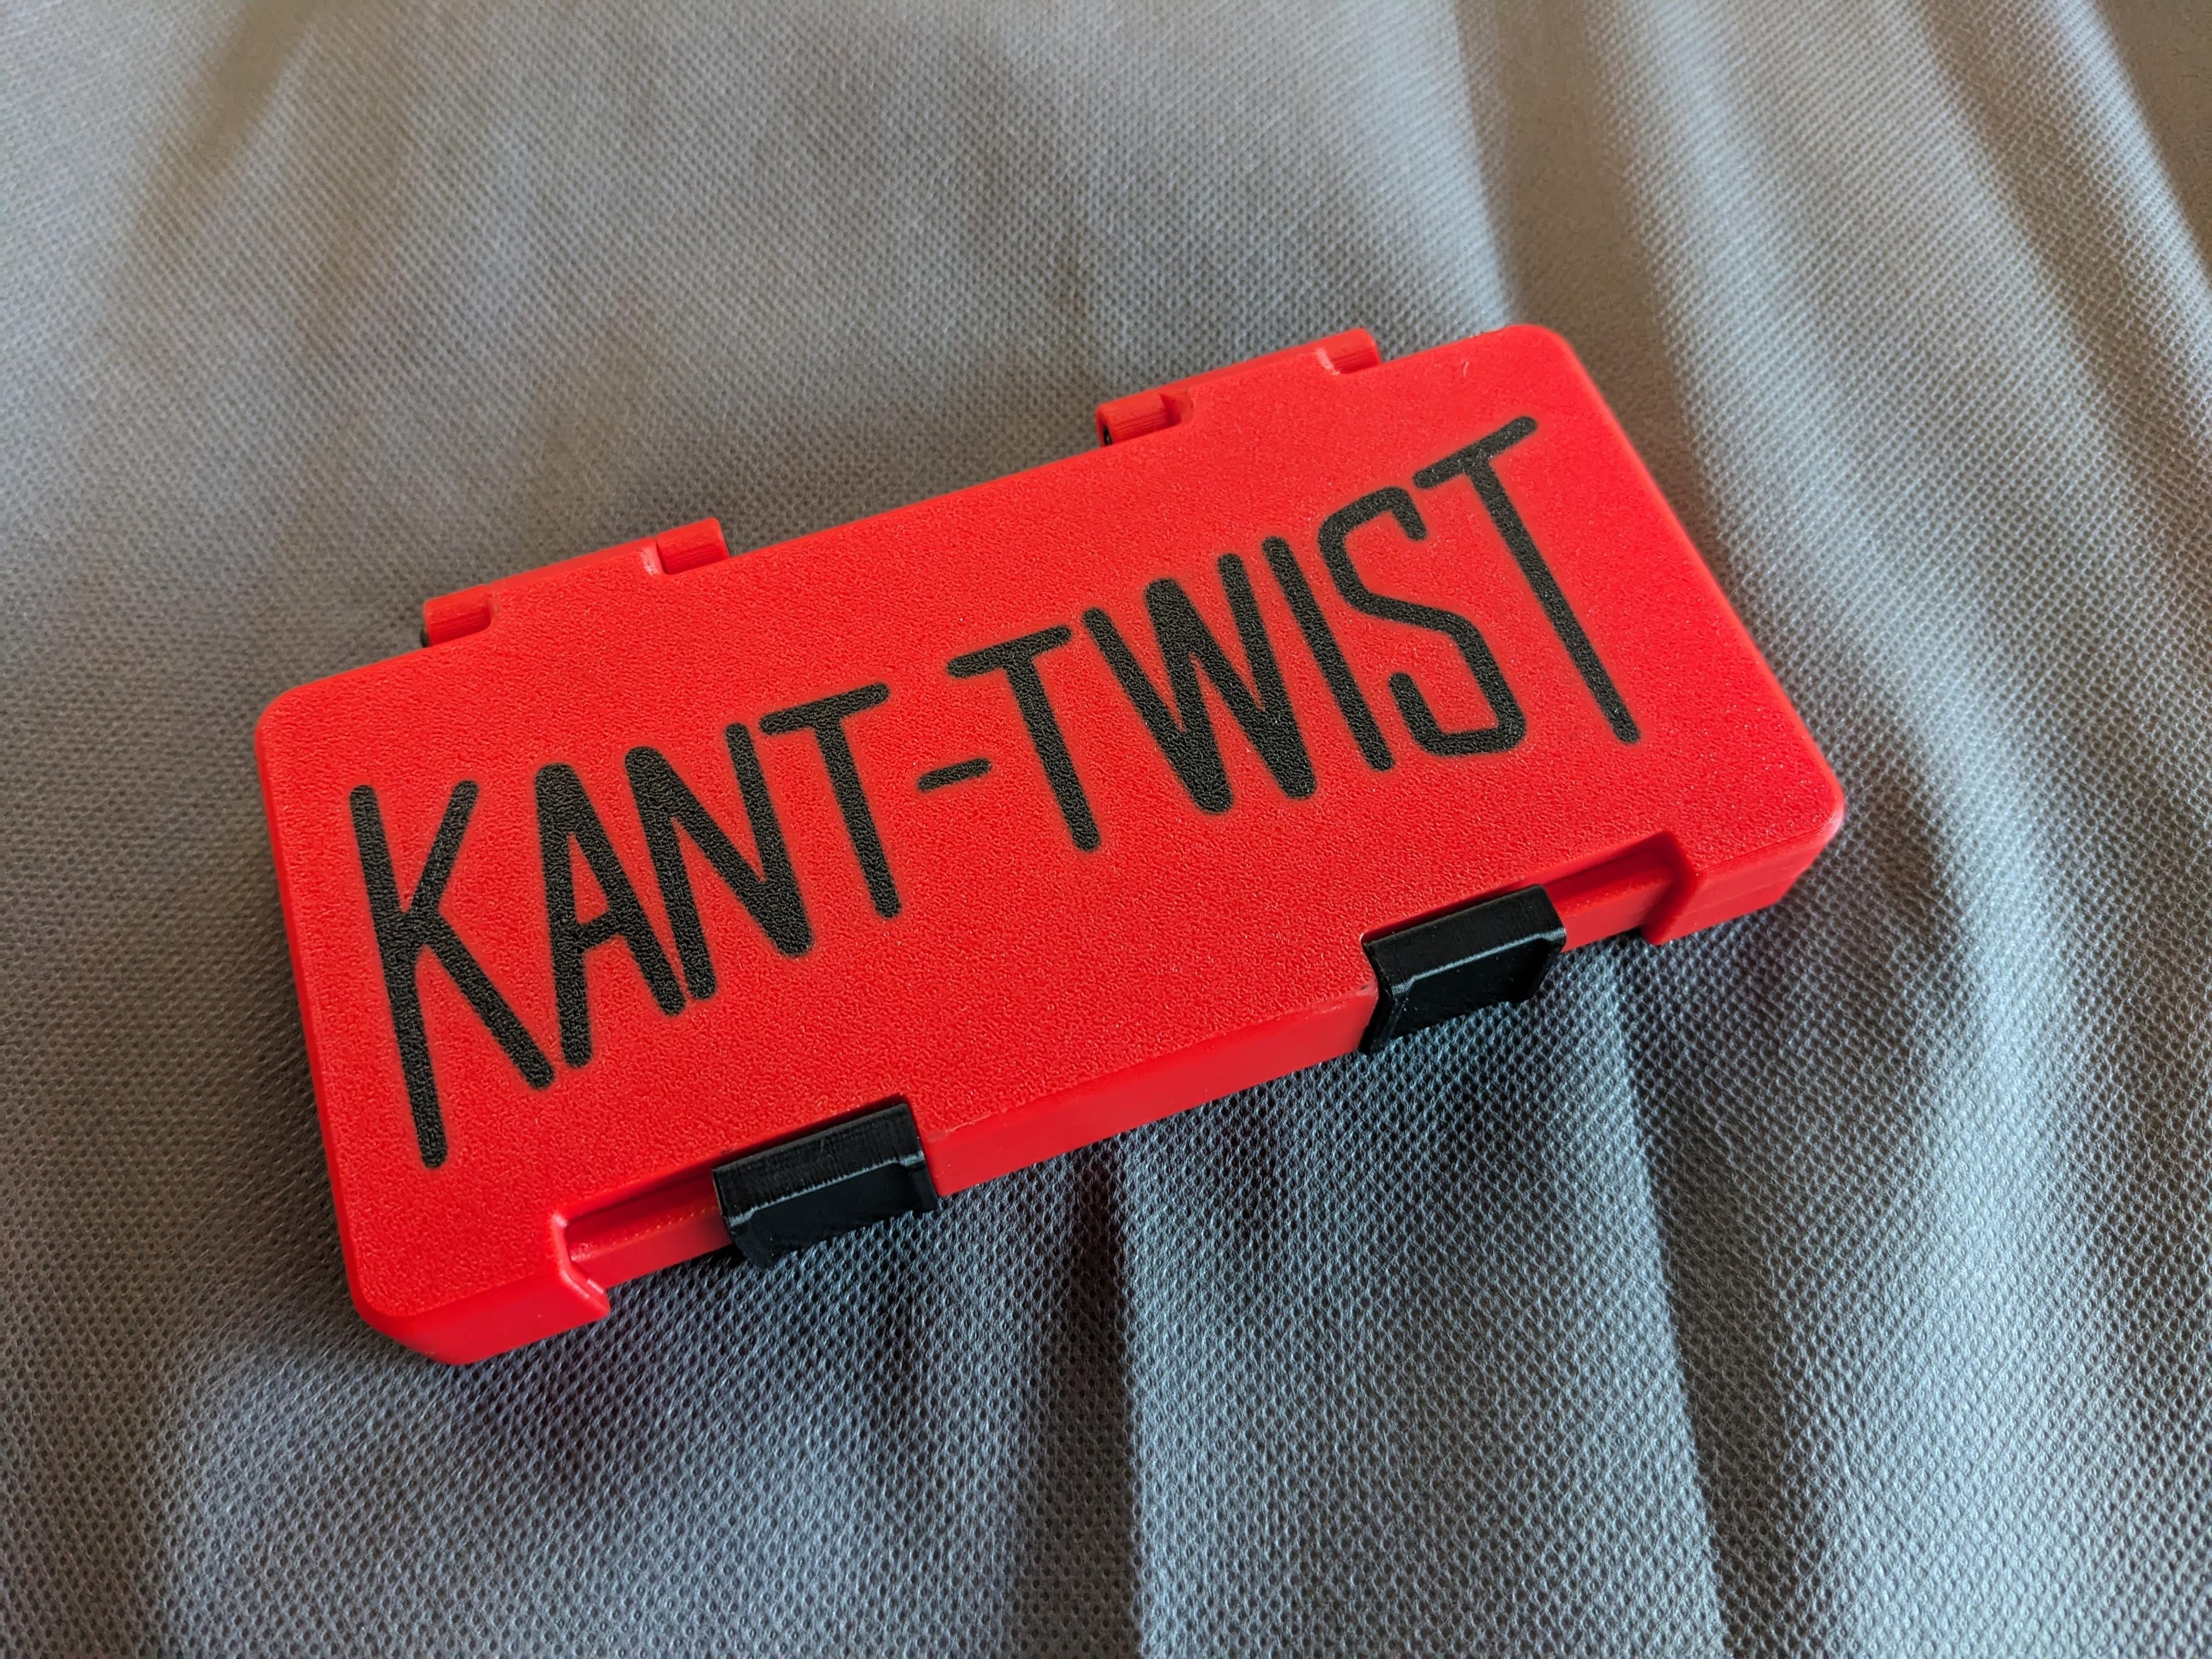 KANT TWIST CLAMP CASE 3d model